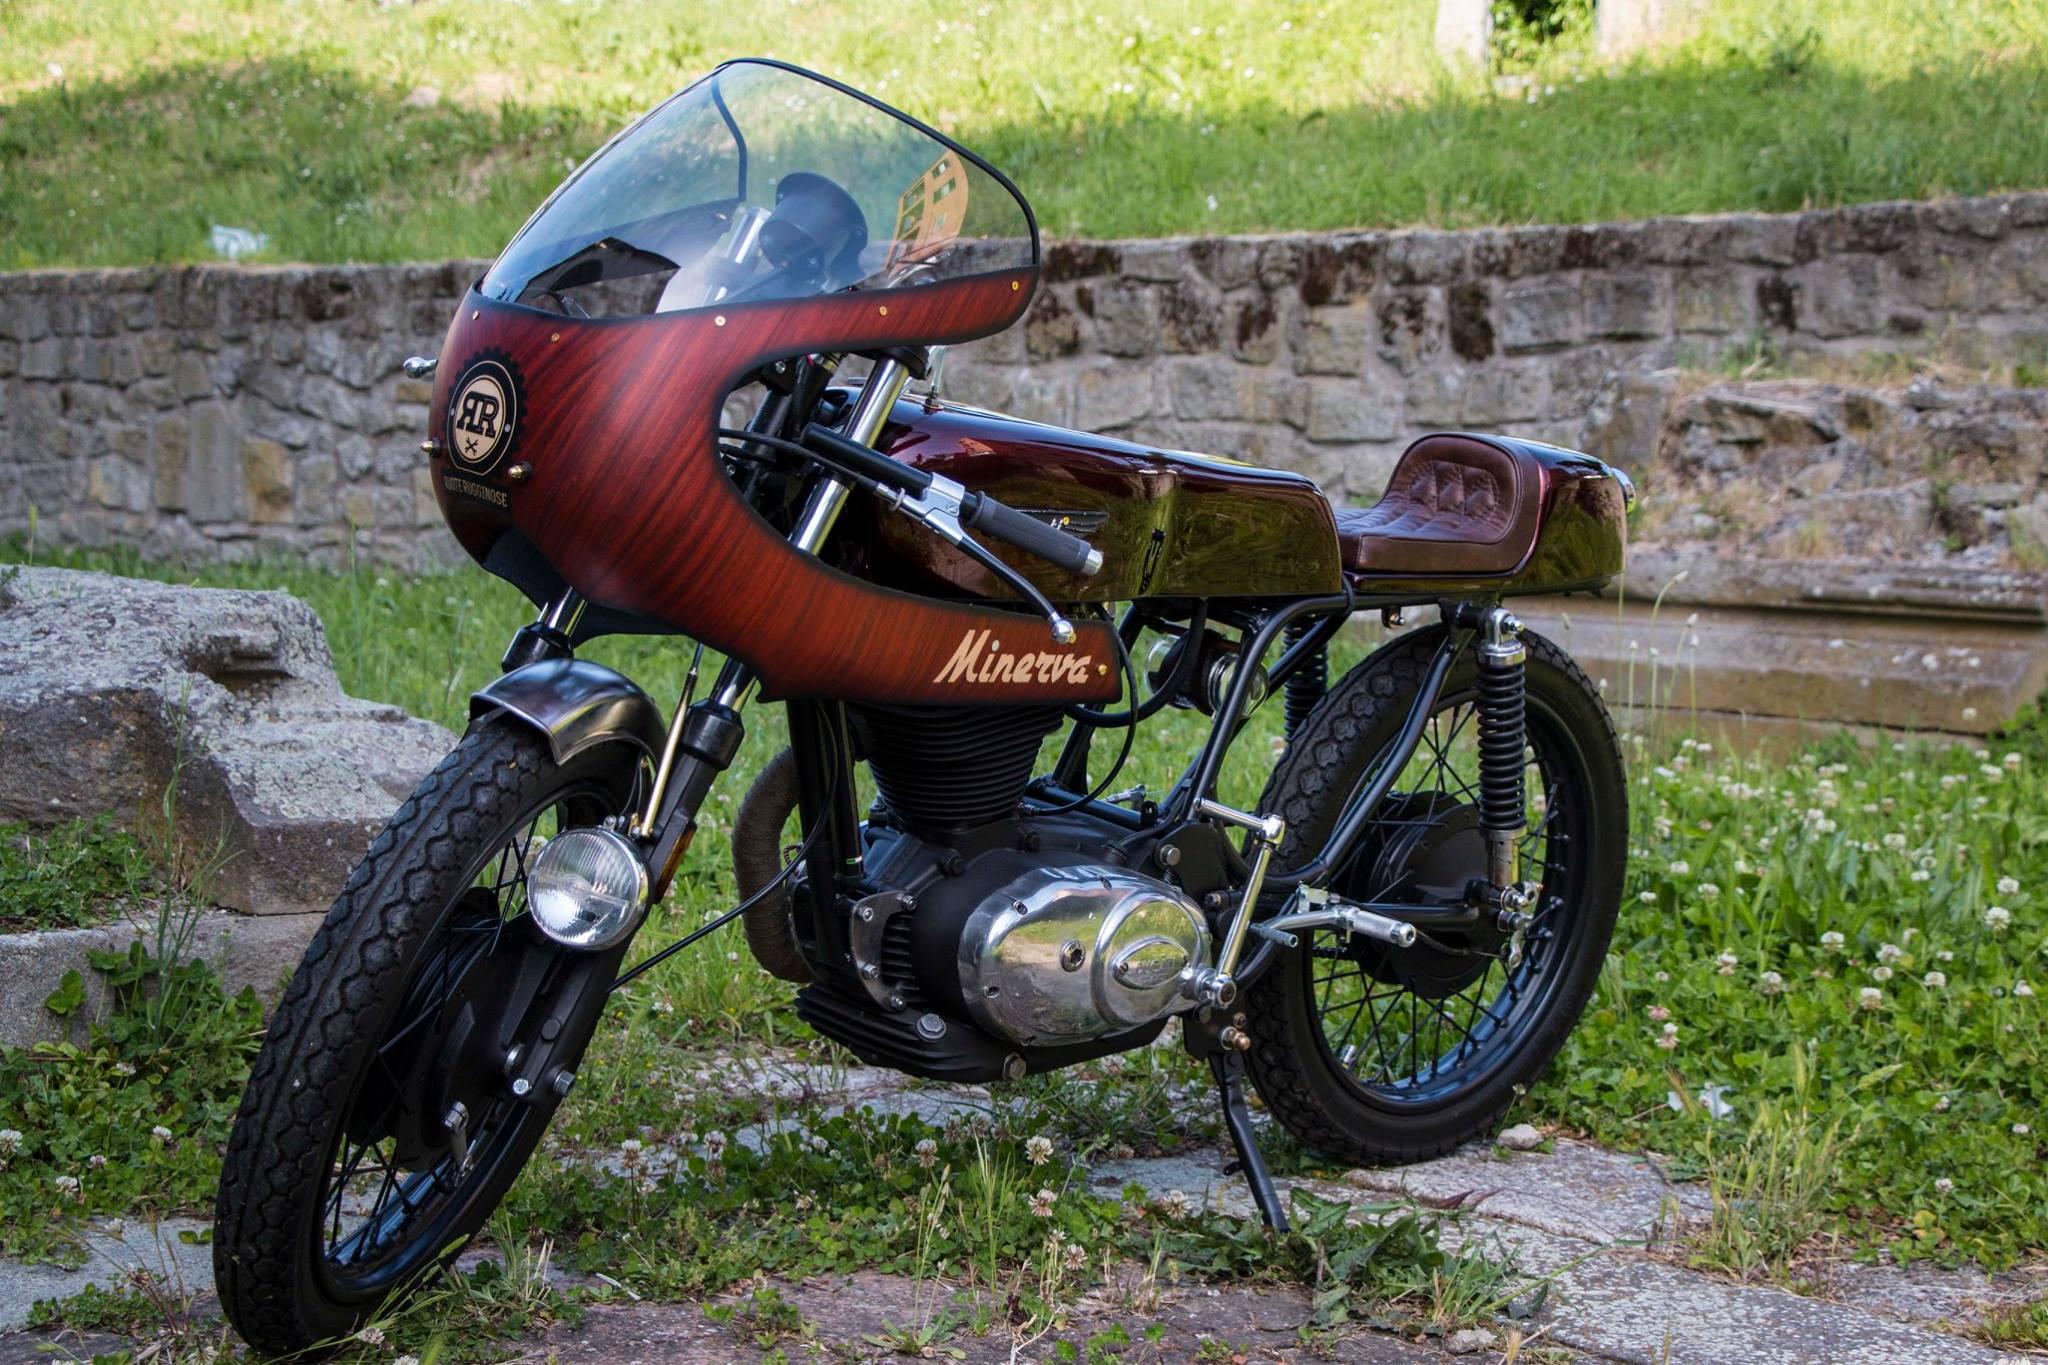 'Minerva' nasce da una Ducati Mark 3 250cc. Simone Ceccarelli l'ha trasformata in una special particolare: cupolino in legno, dettagli in madreperla. L'ha comprata un collezionista belga all'asta organizzata a Parigi da Bonhams